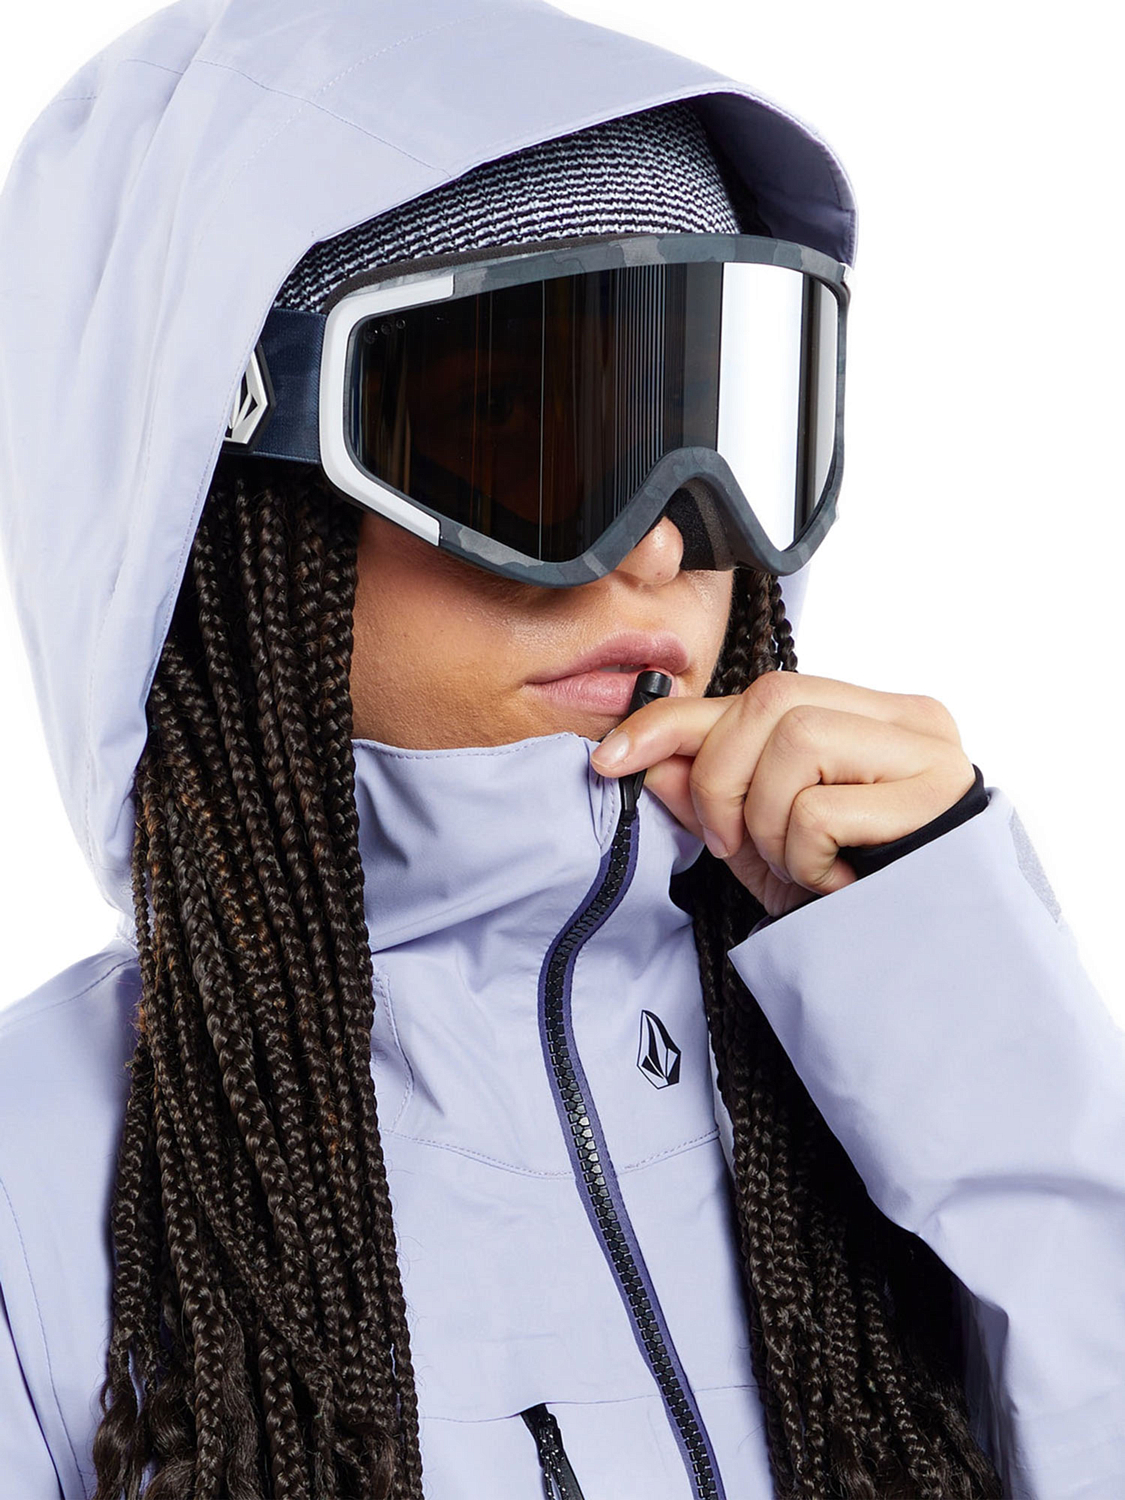 Куртка сноубордическая Volcom Vs 3L Stretch Gore Lilac Ash